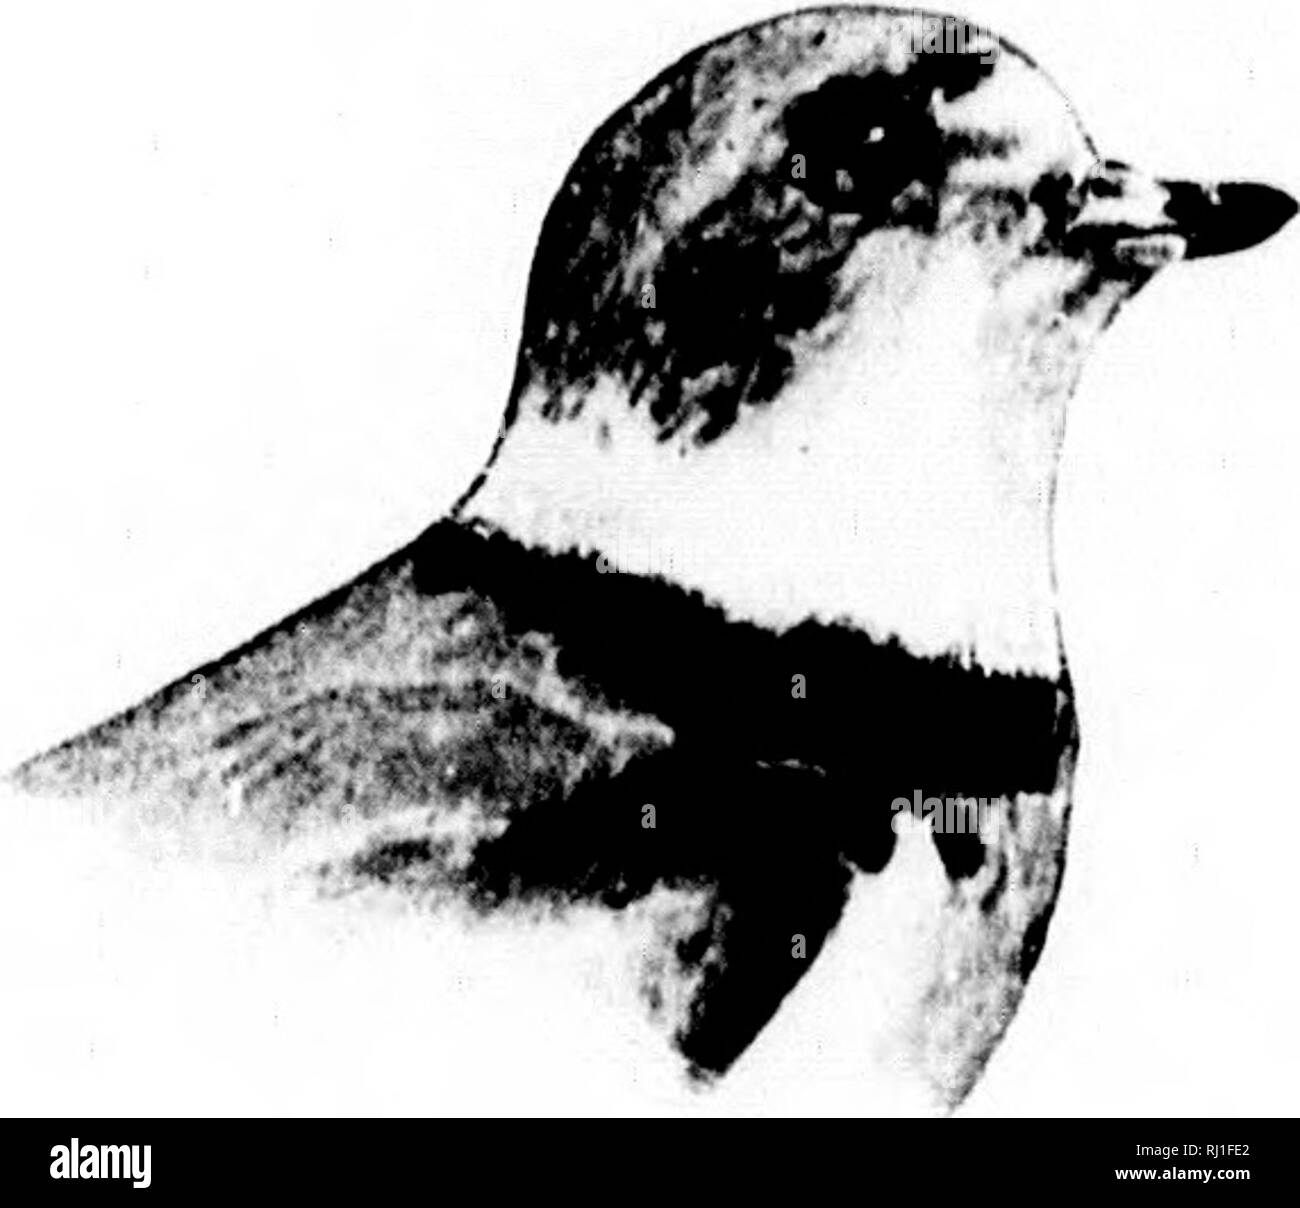 . Come sapere la riva uccelli (Limicolae) del Nord America (sud della Groenlandia e in Alaska) [microformati] : tutte le specie che sono raggruppati secondo la dimensione e il colore. Gli uccelli; Oiseaux. Siii:.;i,Ms AEGIALITIS l'."ii:. /EQIALIXrS SEniPALHATA lUmap. Plover Semipalmaled. Rins-collo. ,.1 MmcK'wI. |.M^.in-tnMn 111. ImH onu.kr Hi-.â ¢&GT;&lt;â ¢ In 1 â ¢ m,!.-â . Â,.,,â,,K:;.sm,â¢m,.;,U.hu.^vl,â ¢,l..l.Mâ¢U^lll v. : M l.ro,.. han.l âf Ulaok su tl... hn.M.t: n-, ol mi.l.T i.Mt-, M-, tl.mat. ,Vi.i,... ..Xt..,âiiM- iuoumm tiM. n.M'k M.wi joiniMji''^'i'*' ':;;7"";"; v..,v Minn.w striscia.: s....sull.lM.i. Foto Stock